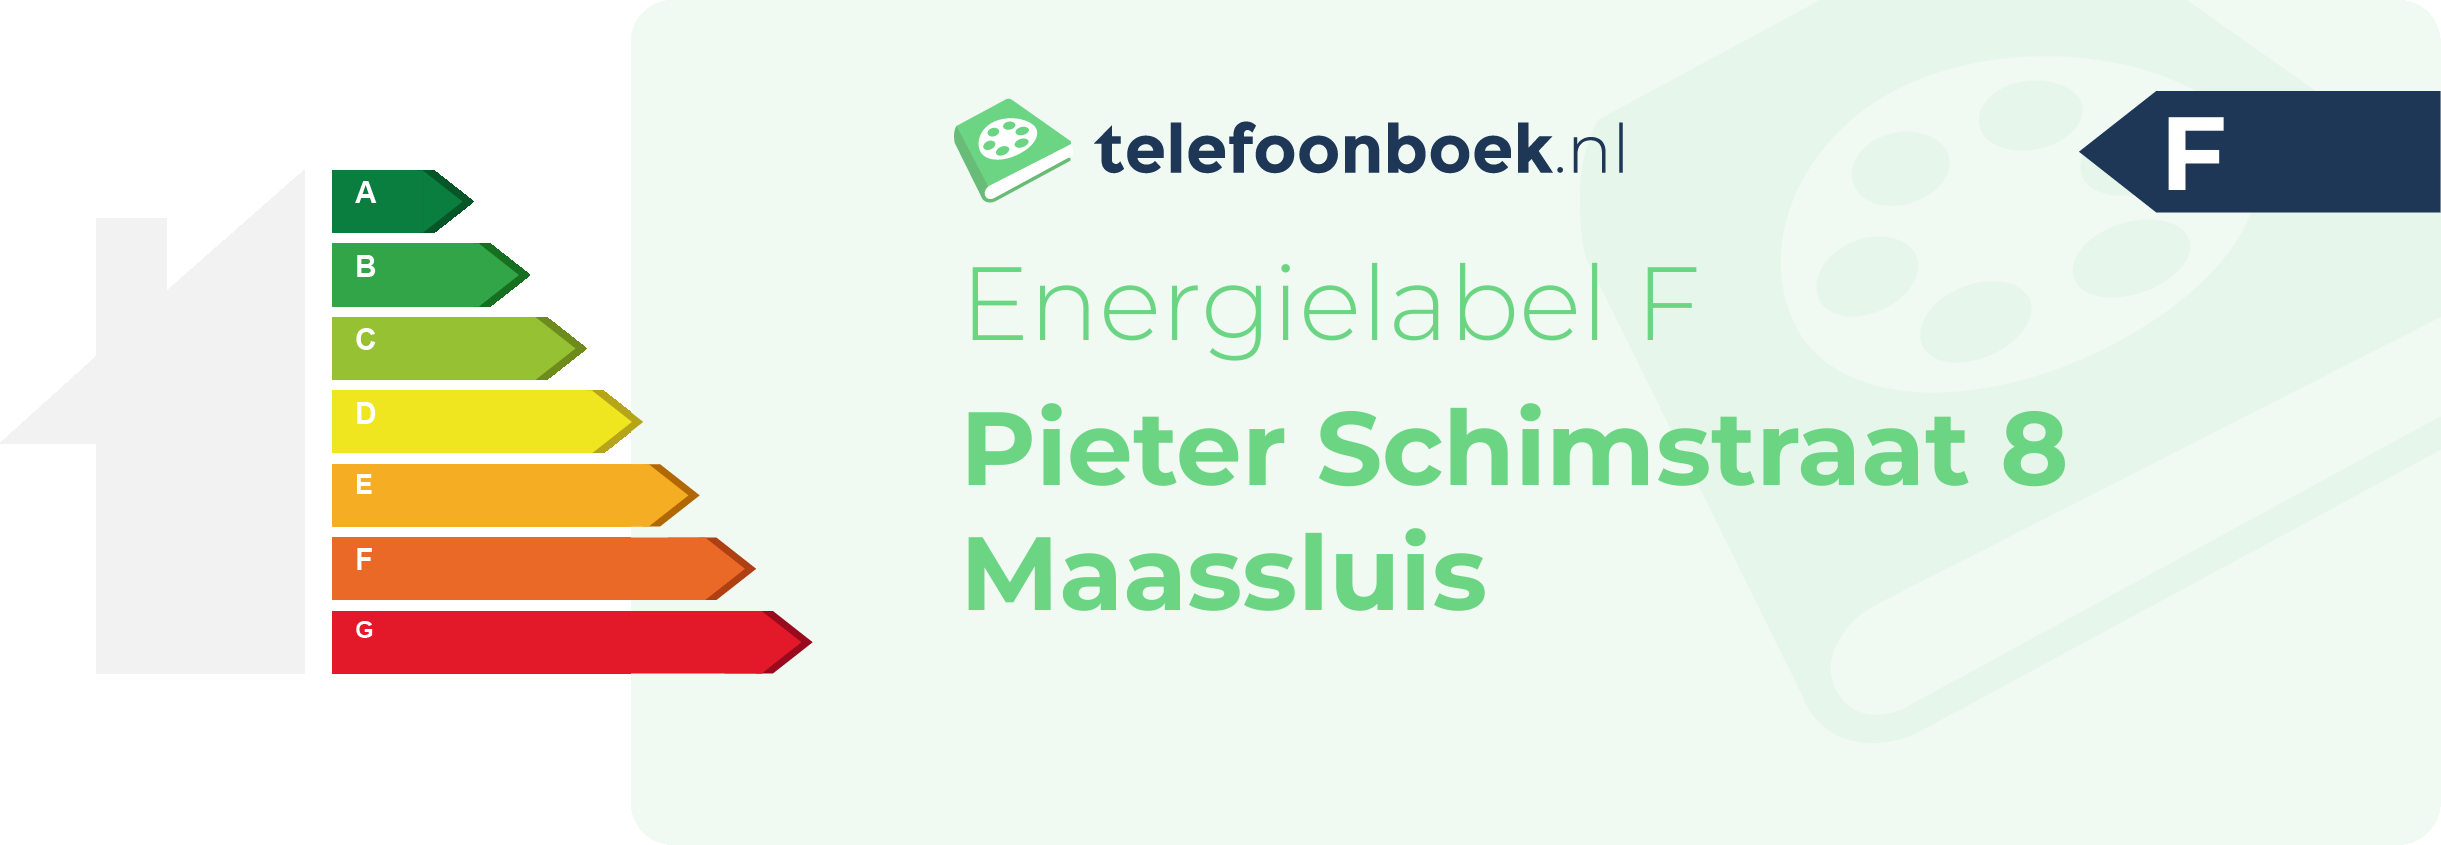 Energielabel Pieter Schimstraat 8 Maassluis